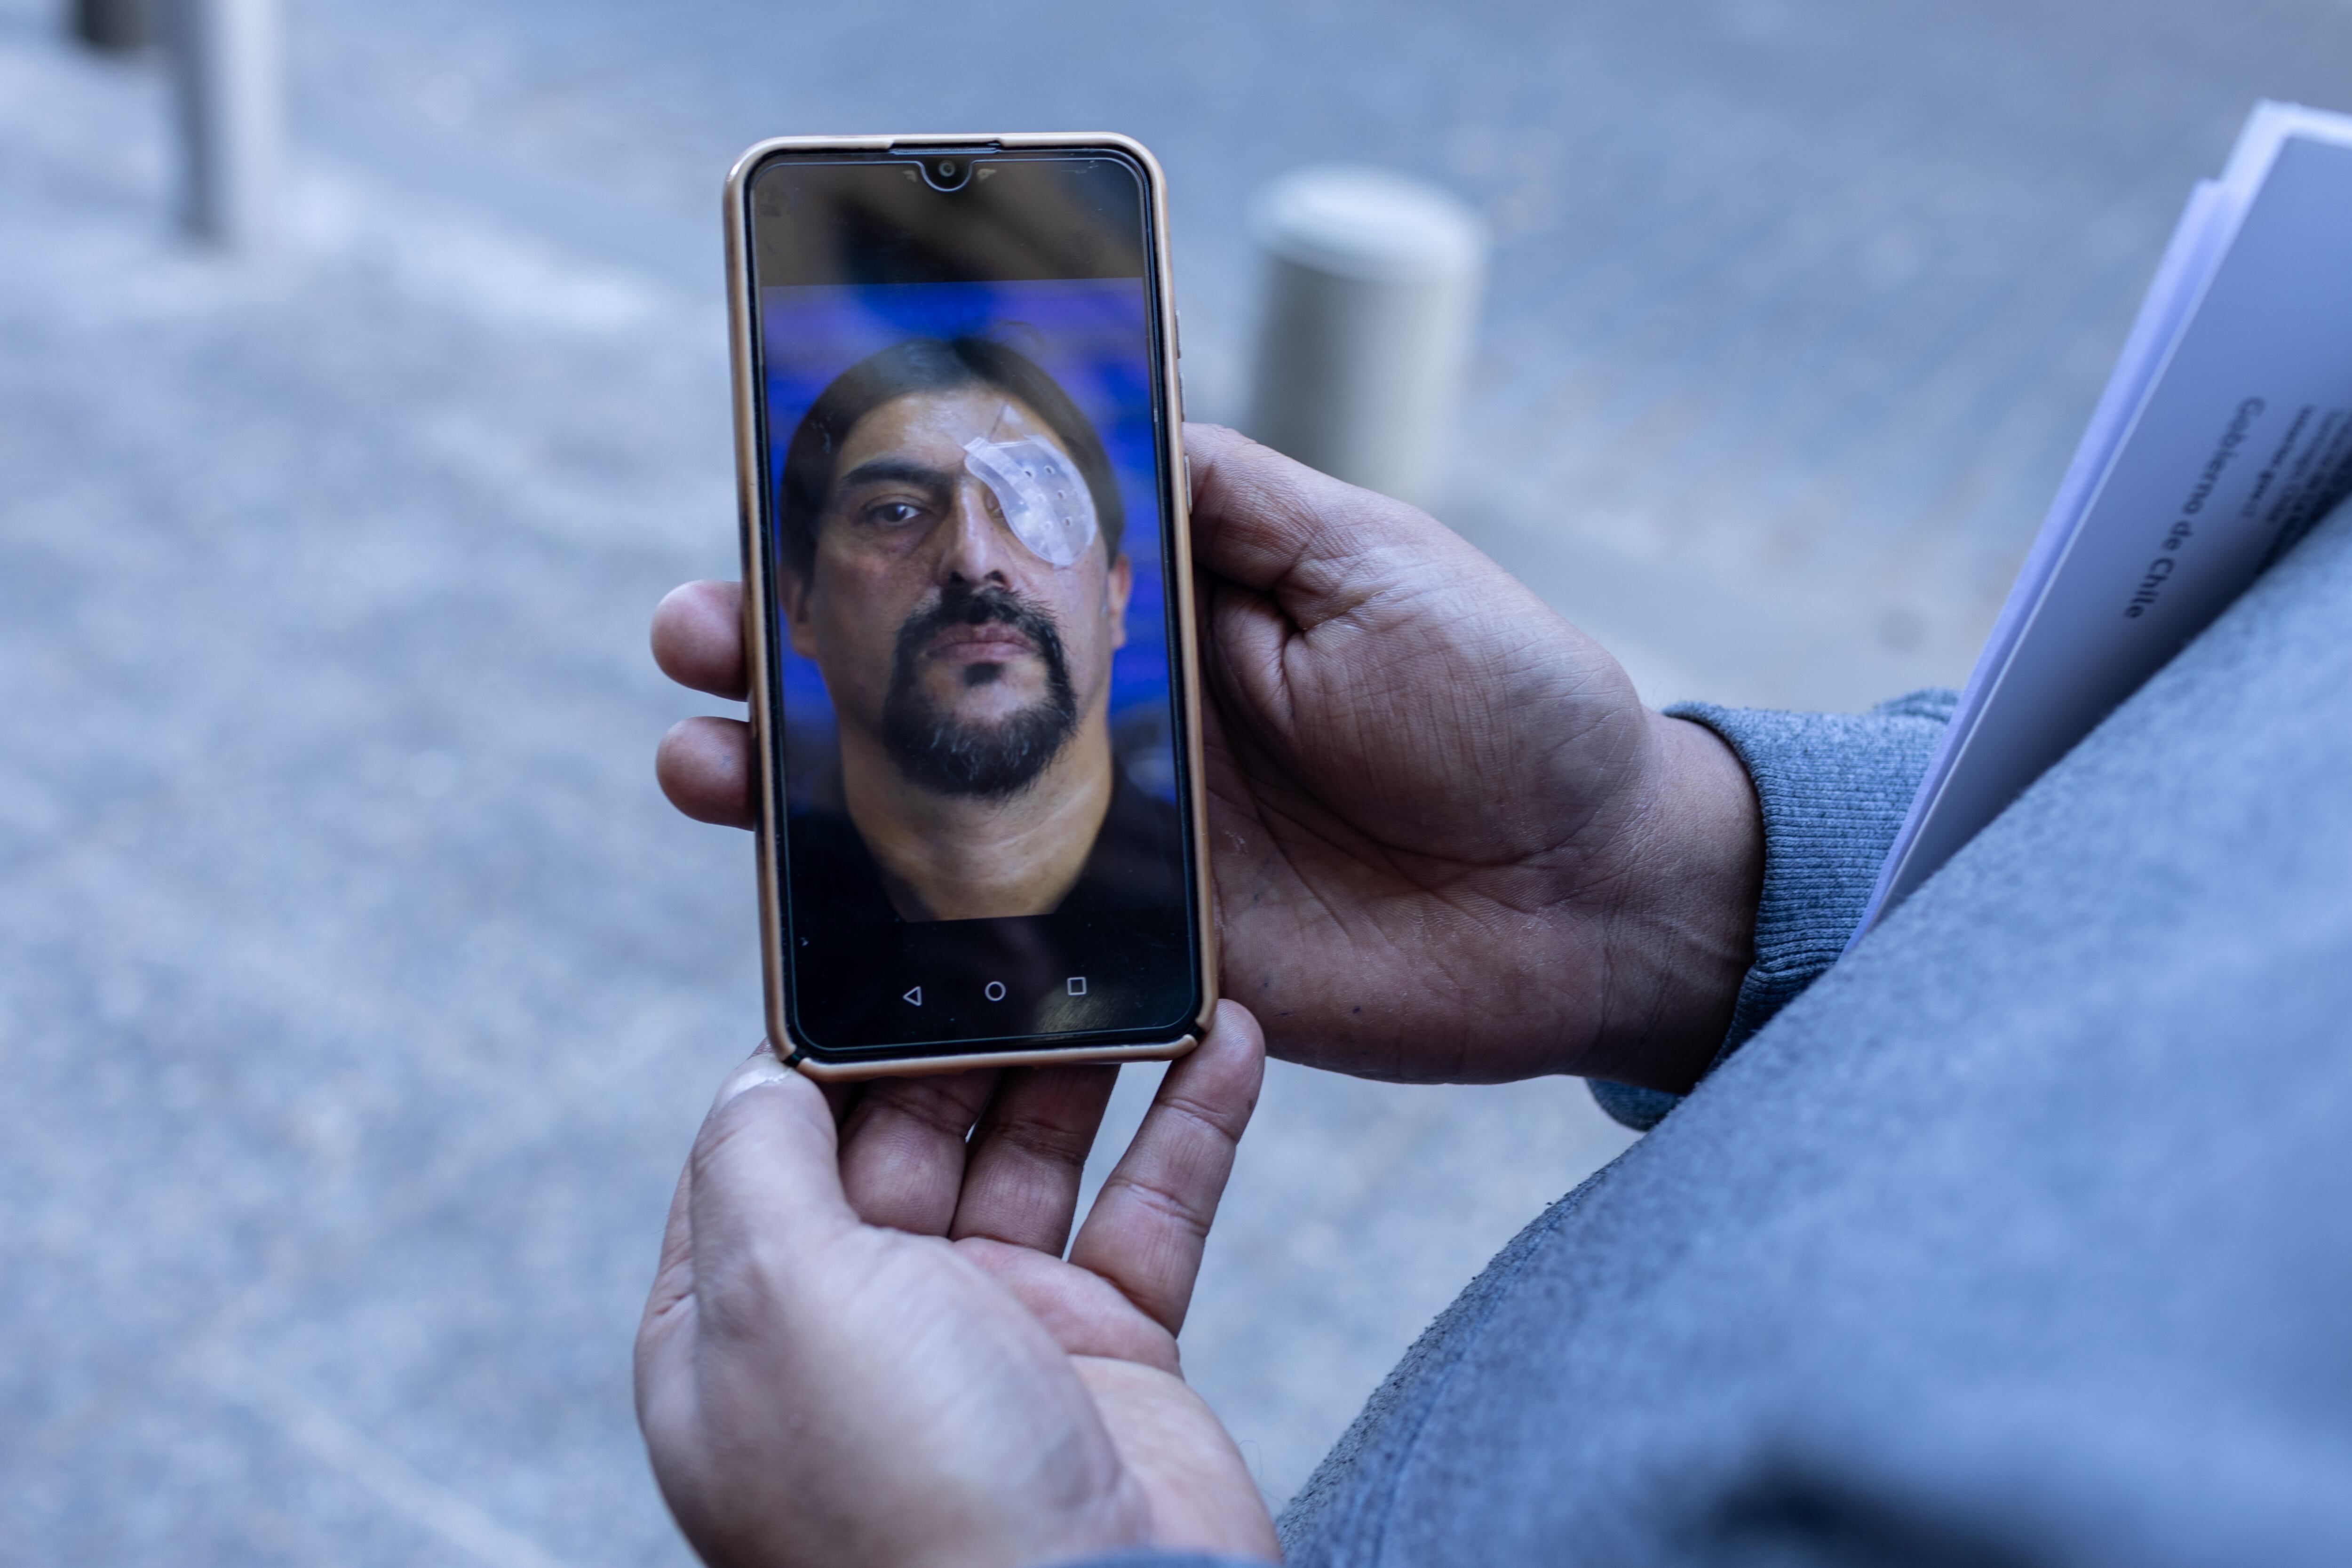 Nelson Iturriaga, herido durante el estallido social en Chile del año 2019, muestra una fotografía en su celular de ese periodo. 